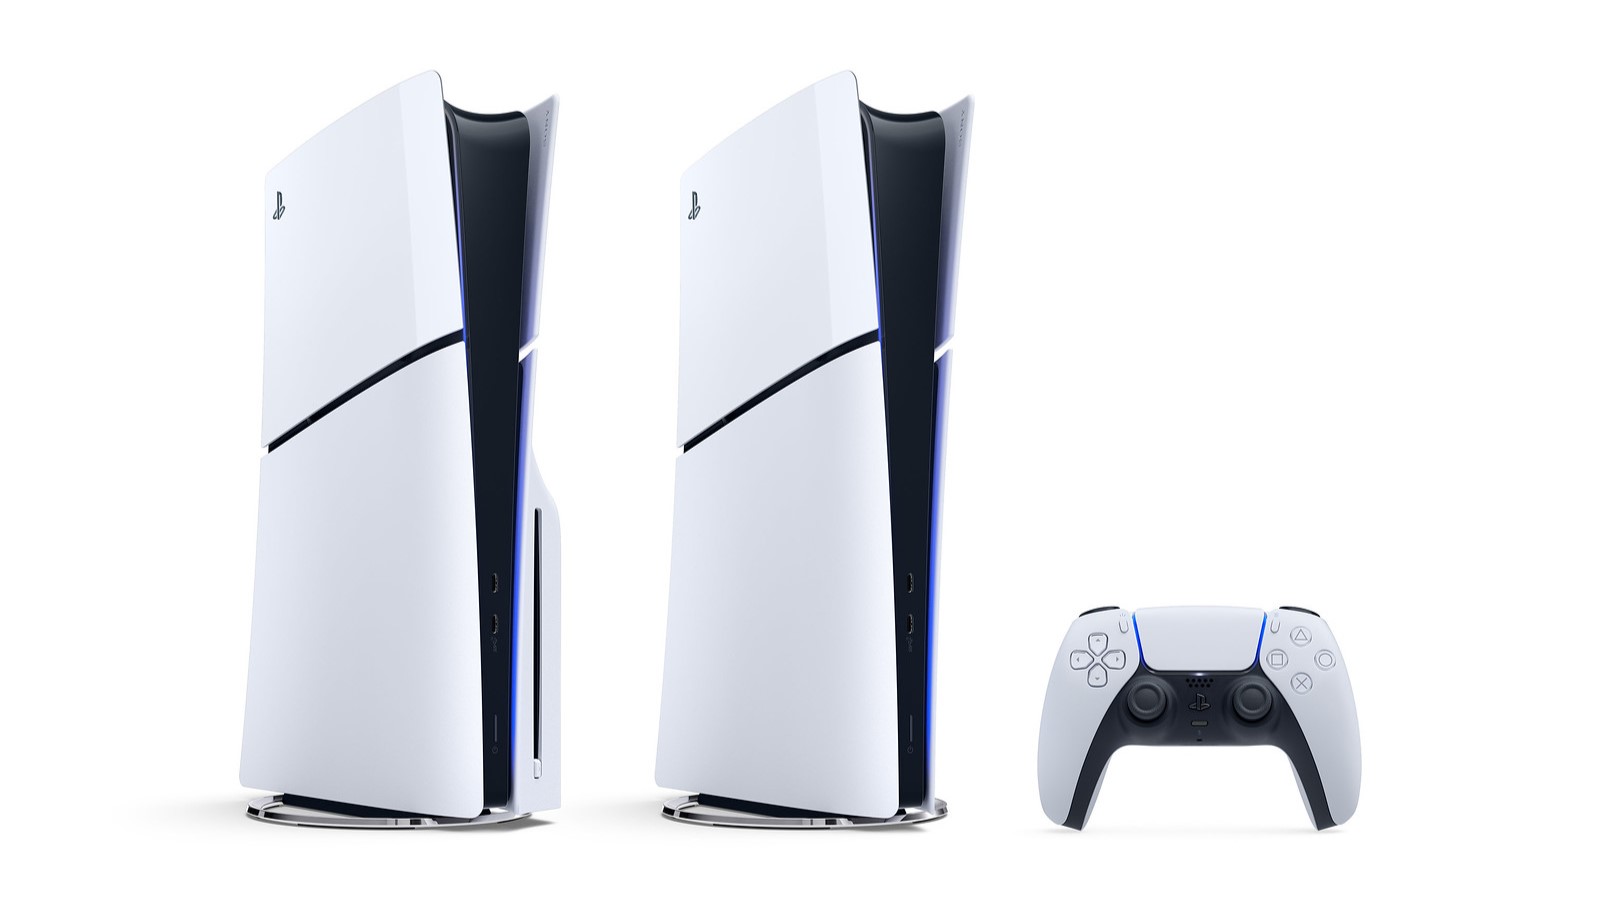 La PlayStation 5 (PS5) Slim est officielle : prix et